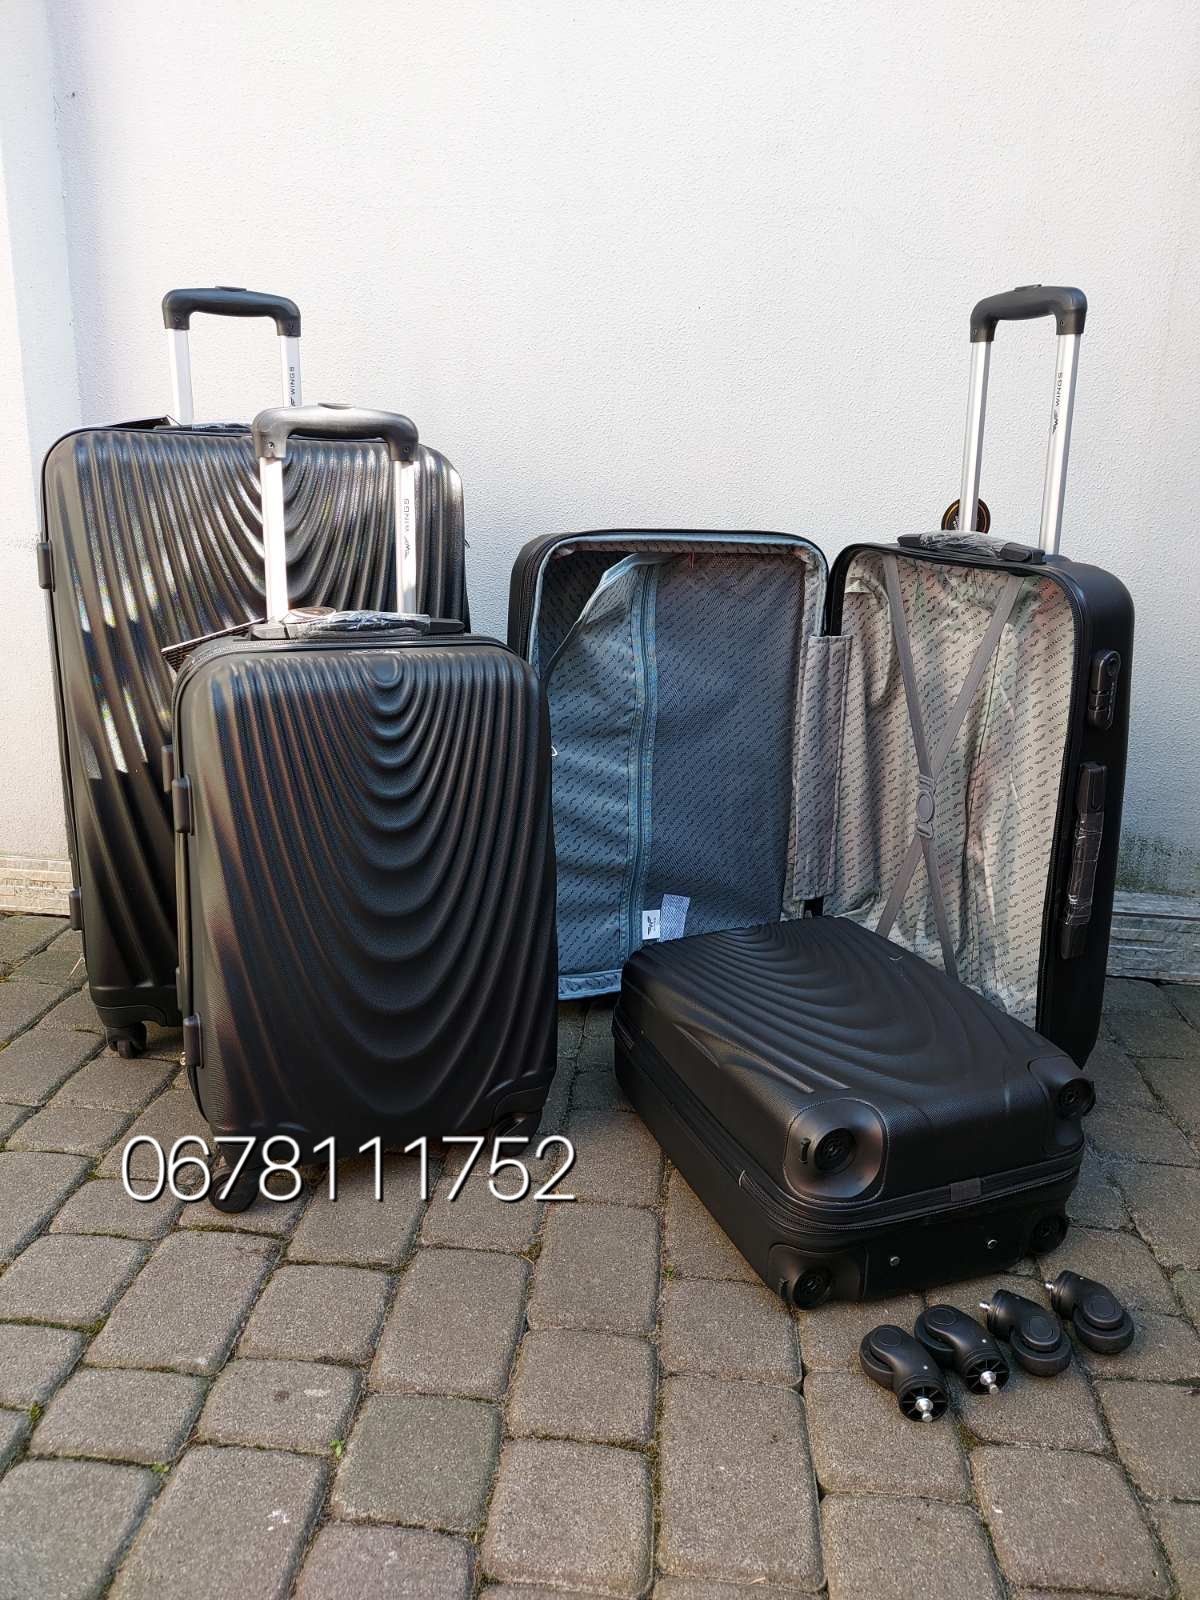 WINGS 304 Польща XS/S/M/L валізи чемоданы сумки на колесах  поклажа